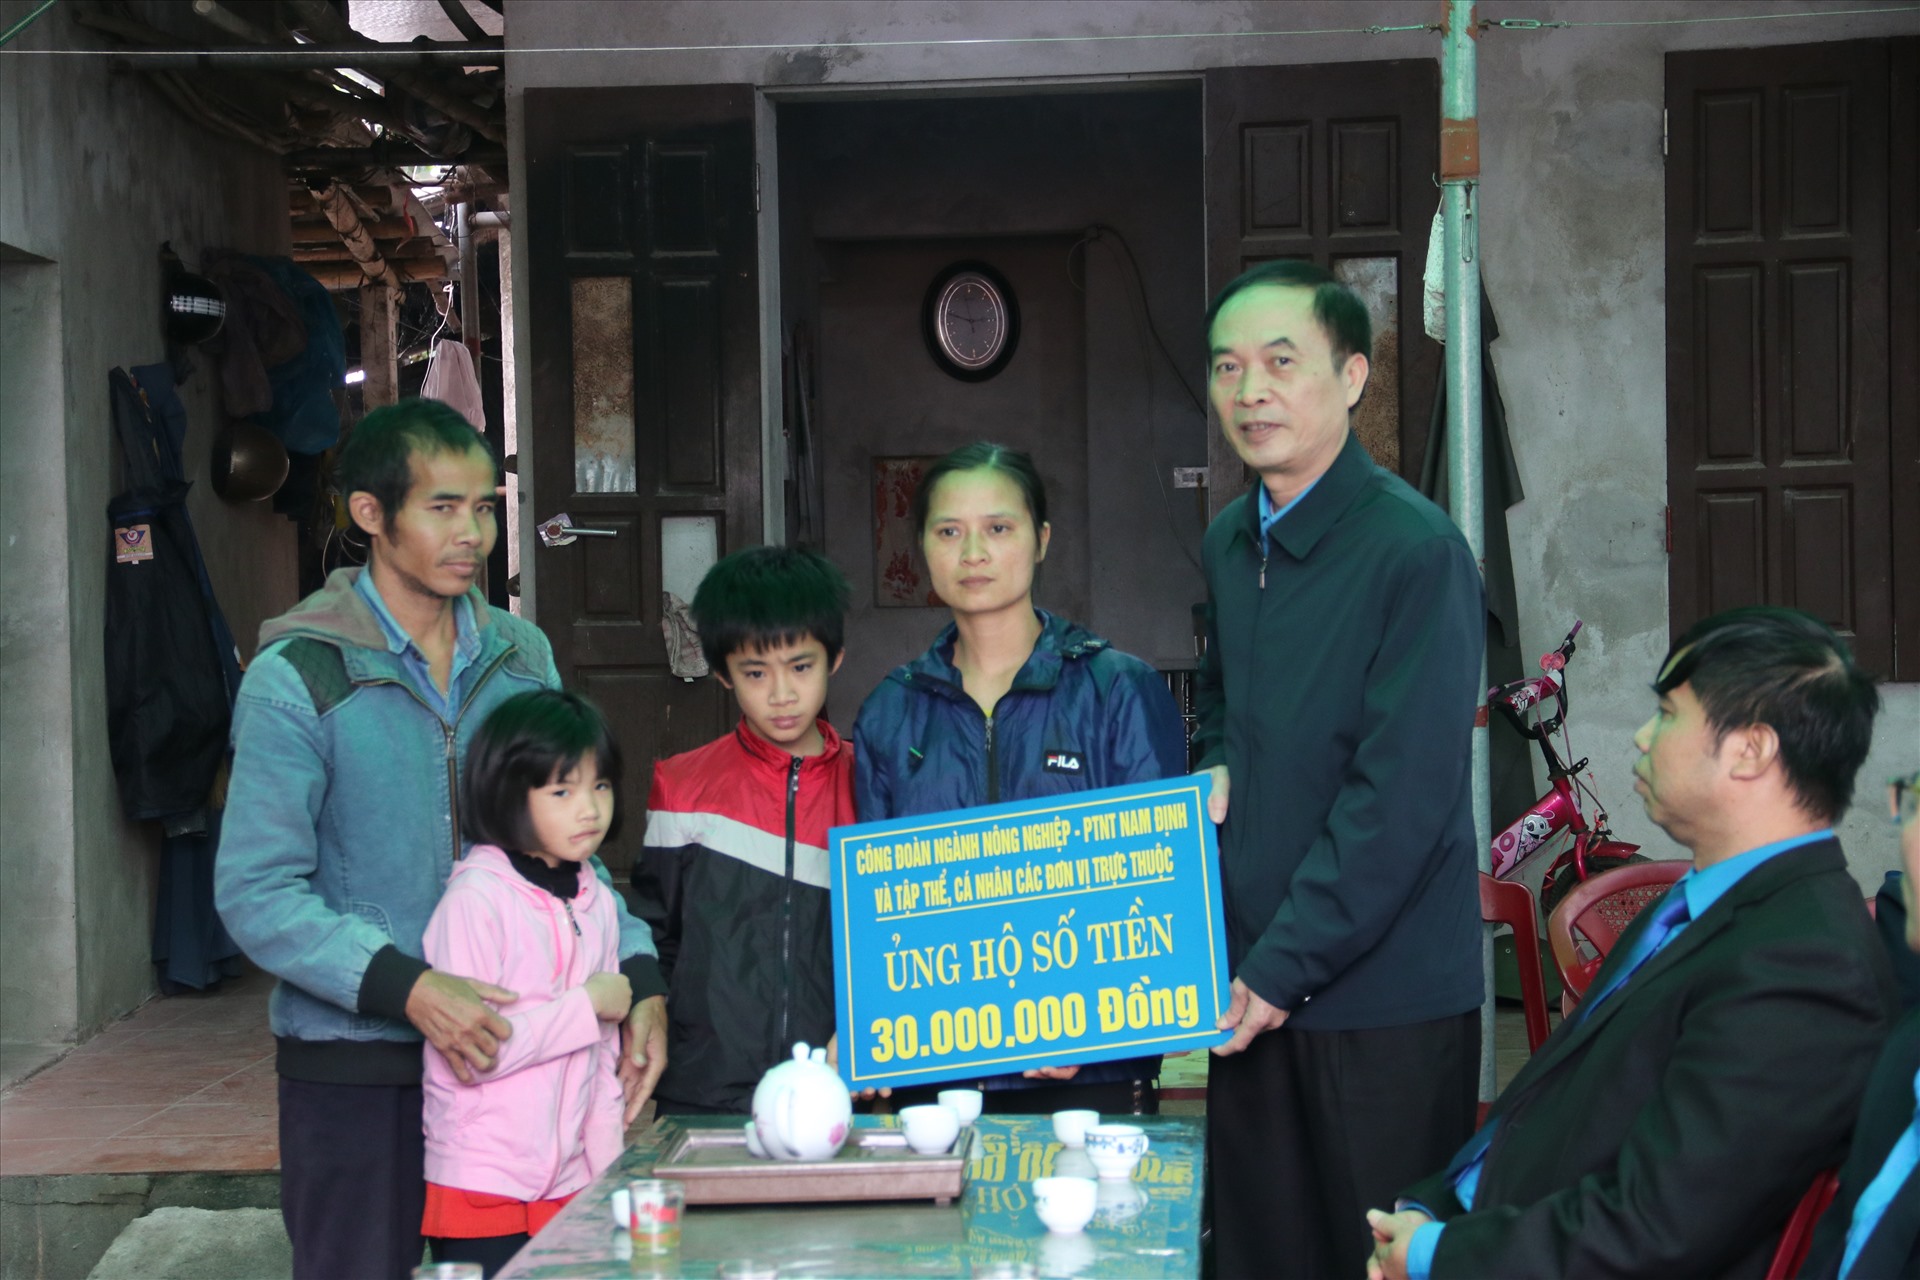 Đồng chí Vũ Văn Kham - Chủ tịch Công đoàn ngành Nông nghiệp và phát triển nông thôn tỉnh - trao tiền hỗ trợ cho gia đình chị Hảo.